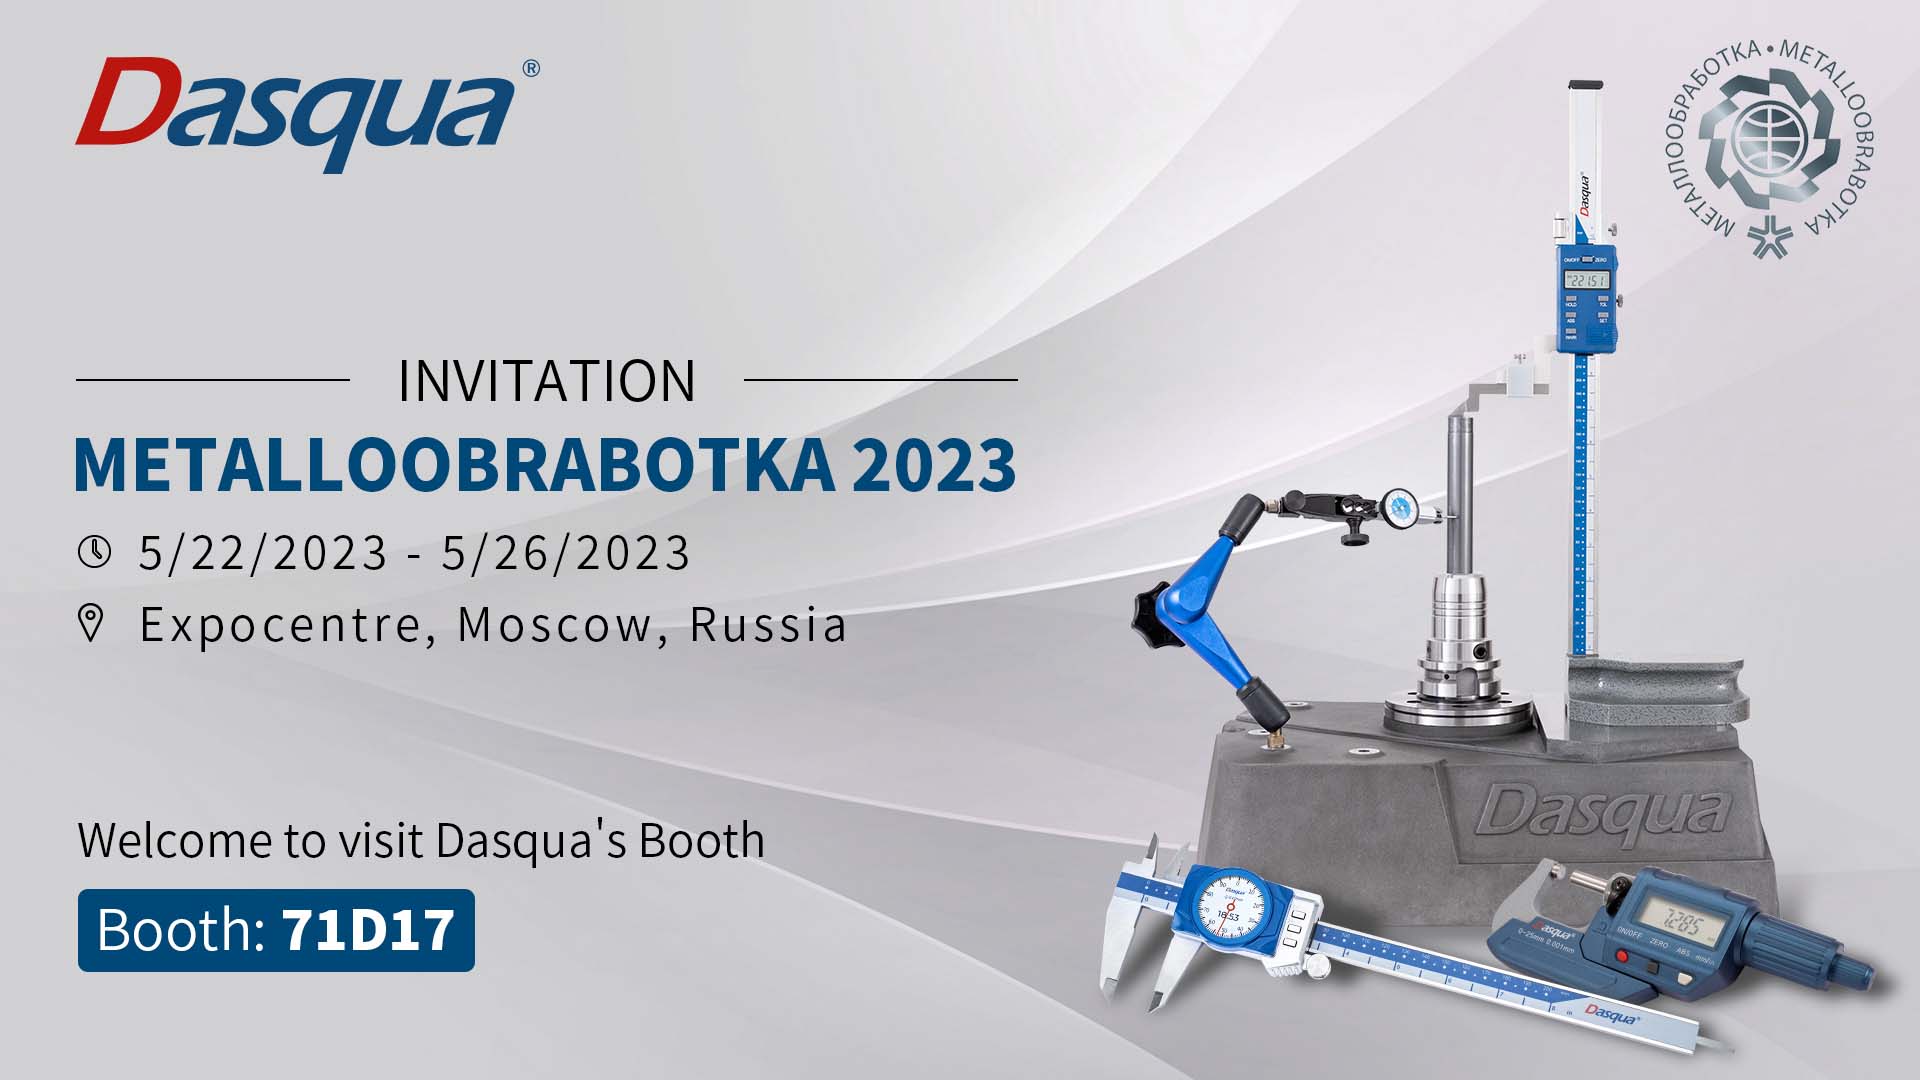 23-я Металлообробка Москва - Міжнародна виставка технологій обробки матеріалів, машин та інструментів